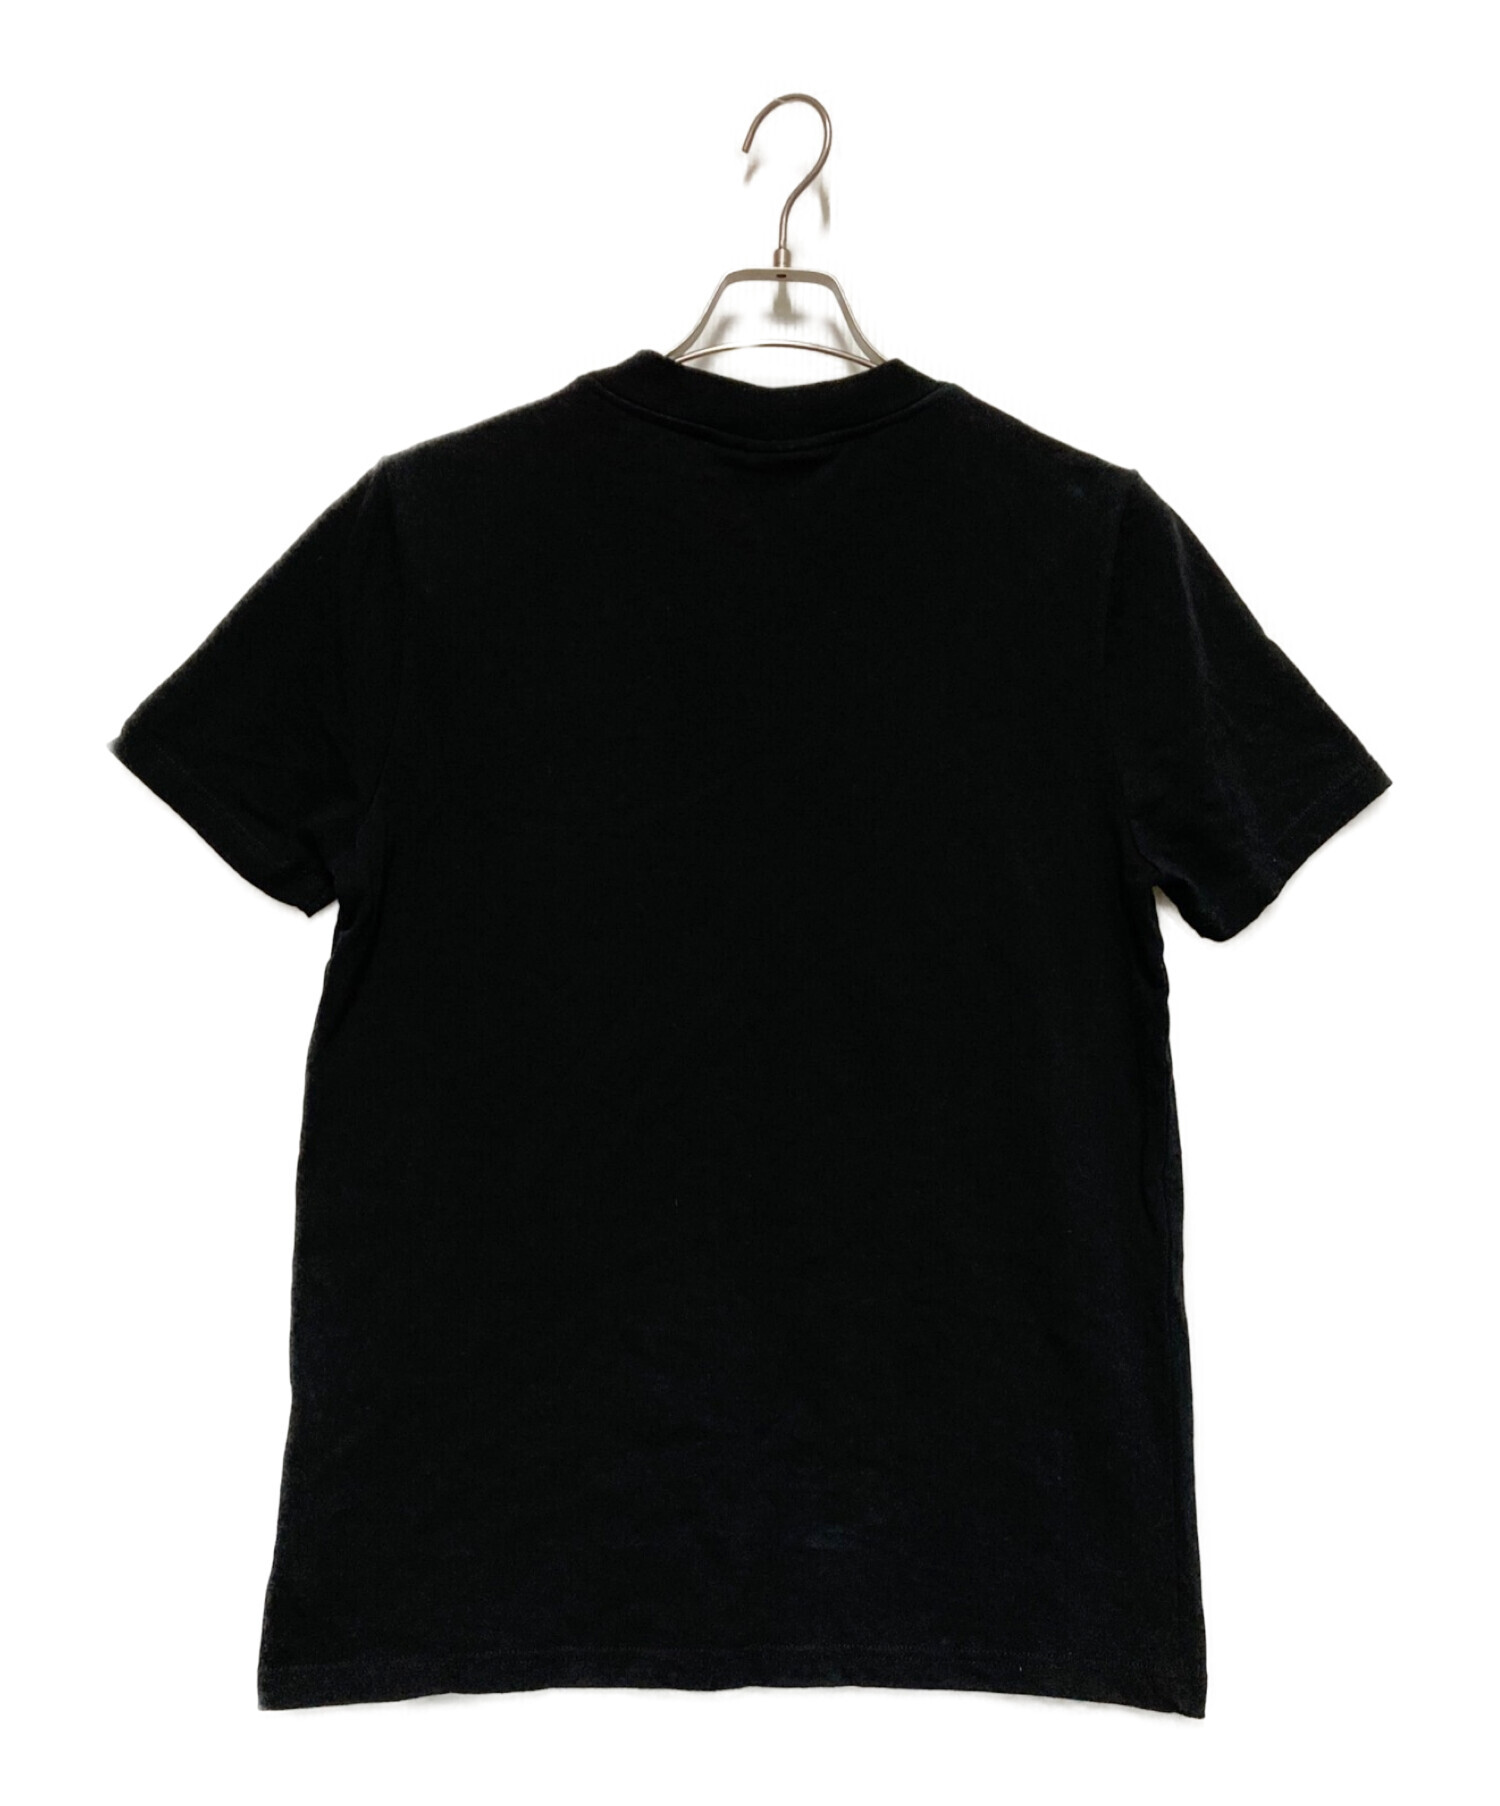 courreges (クレージュ) ロゴTシャツ ブラック サイズ:M